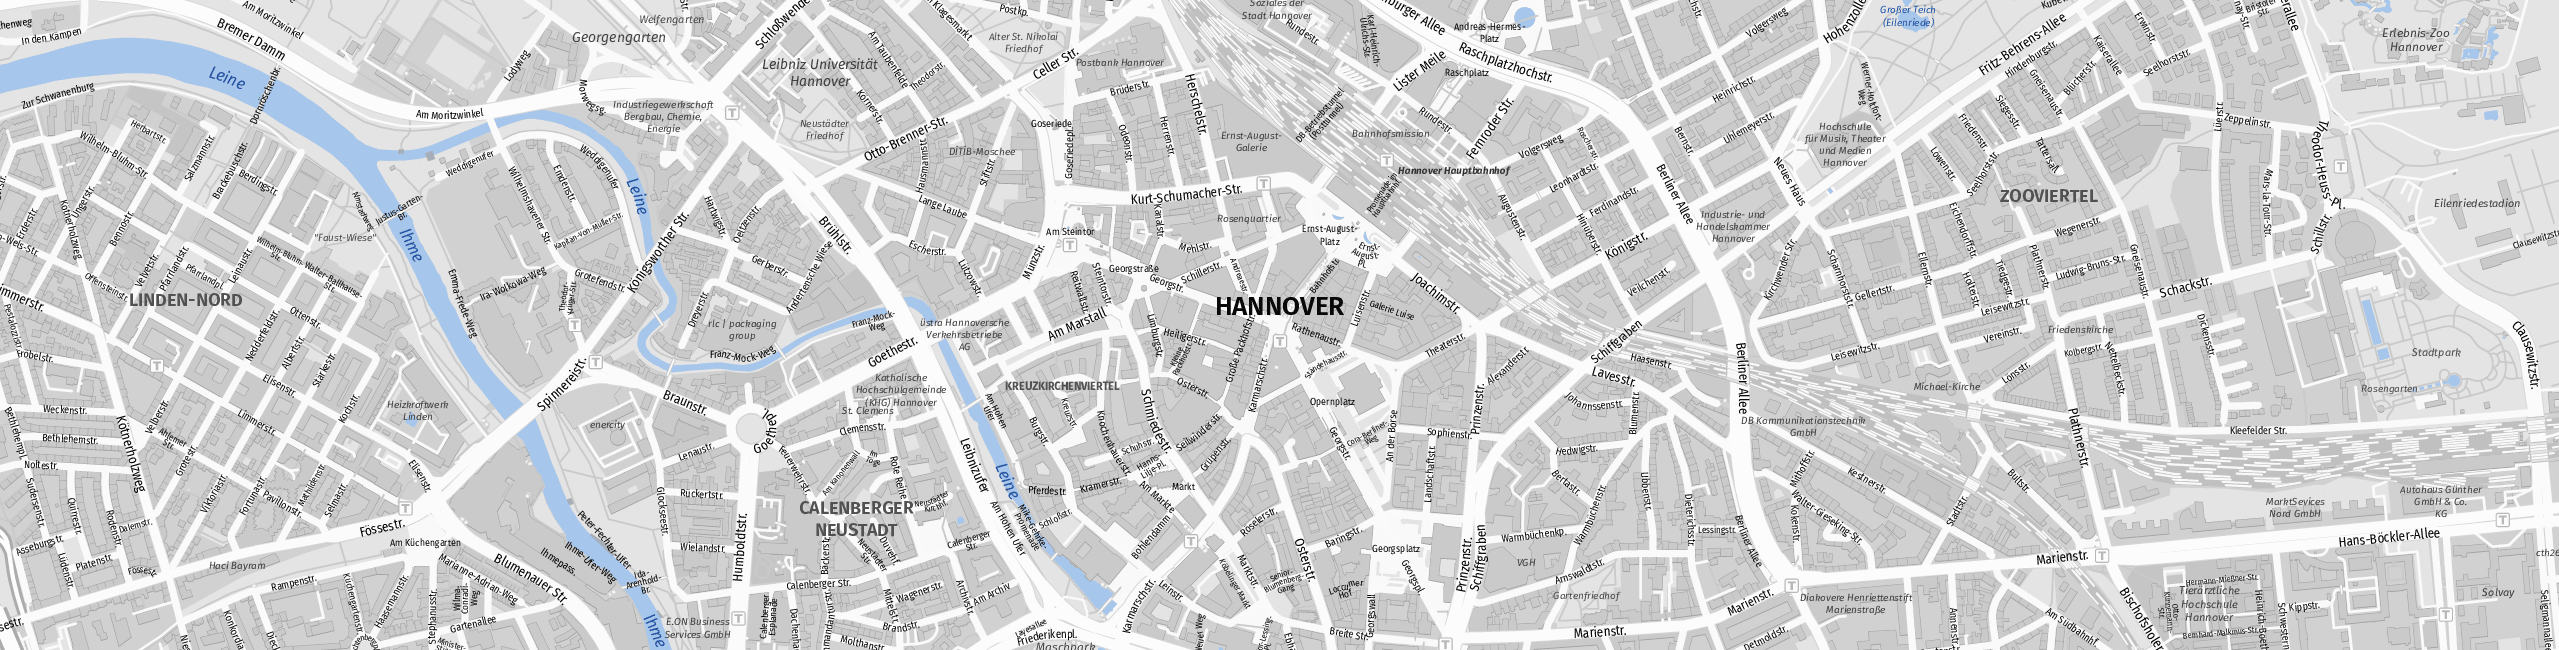 Stadtplan Hanover zum Downloaden.